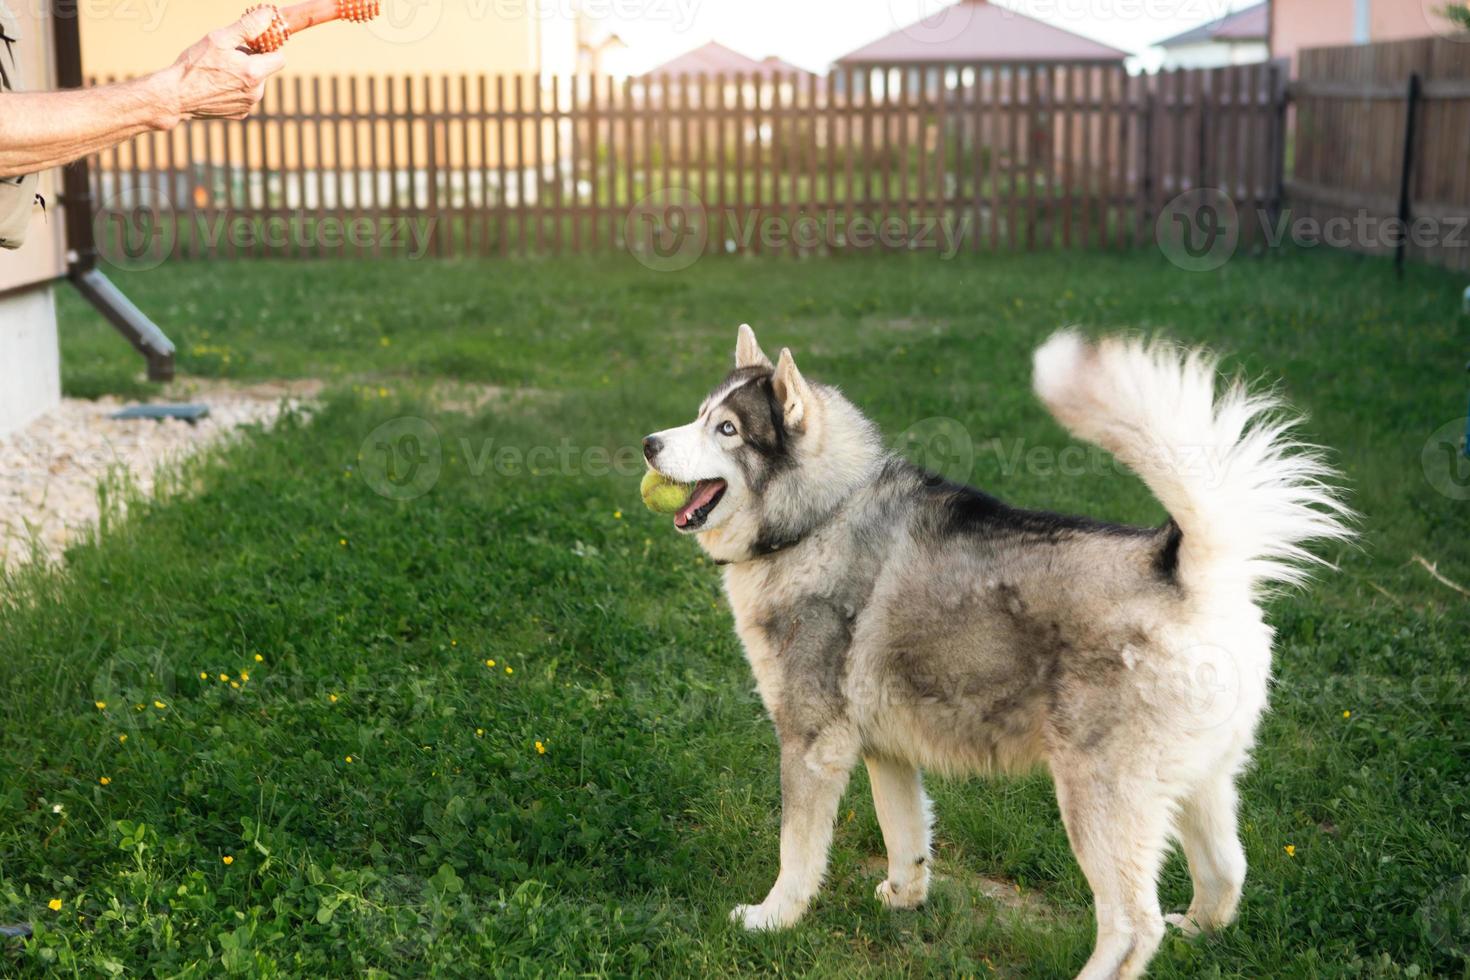 proprietário está brincando com um cachorro husky no quintal de casa na grama atrás da cerca. um brinquedo na mão do dono, um husky feliz com uma bola nos dentes. amizade com um animal de estimação, cuidados, treinamento e entretenimento foto